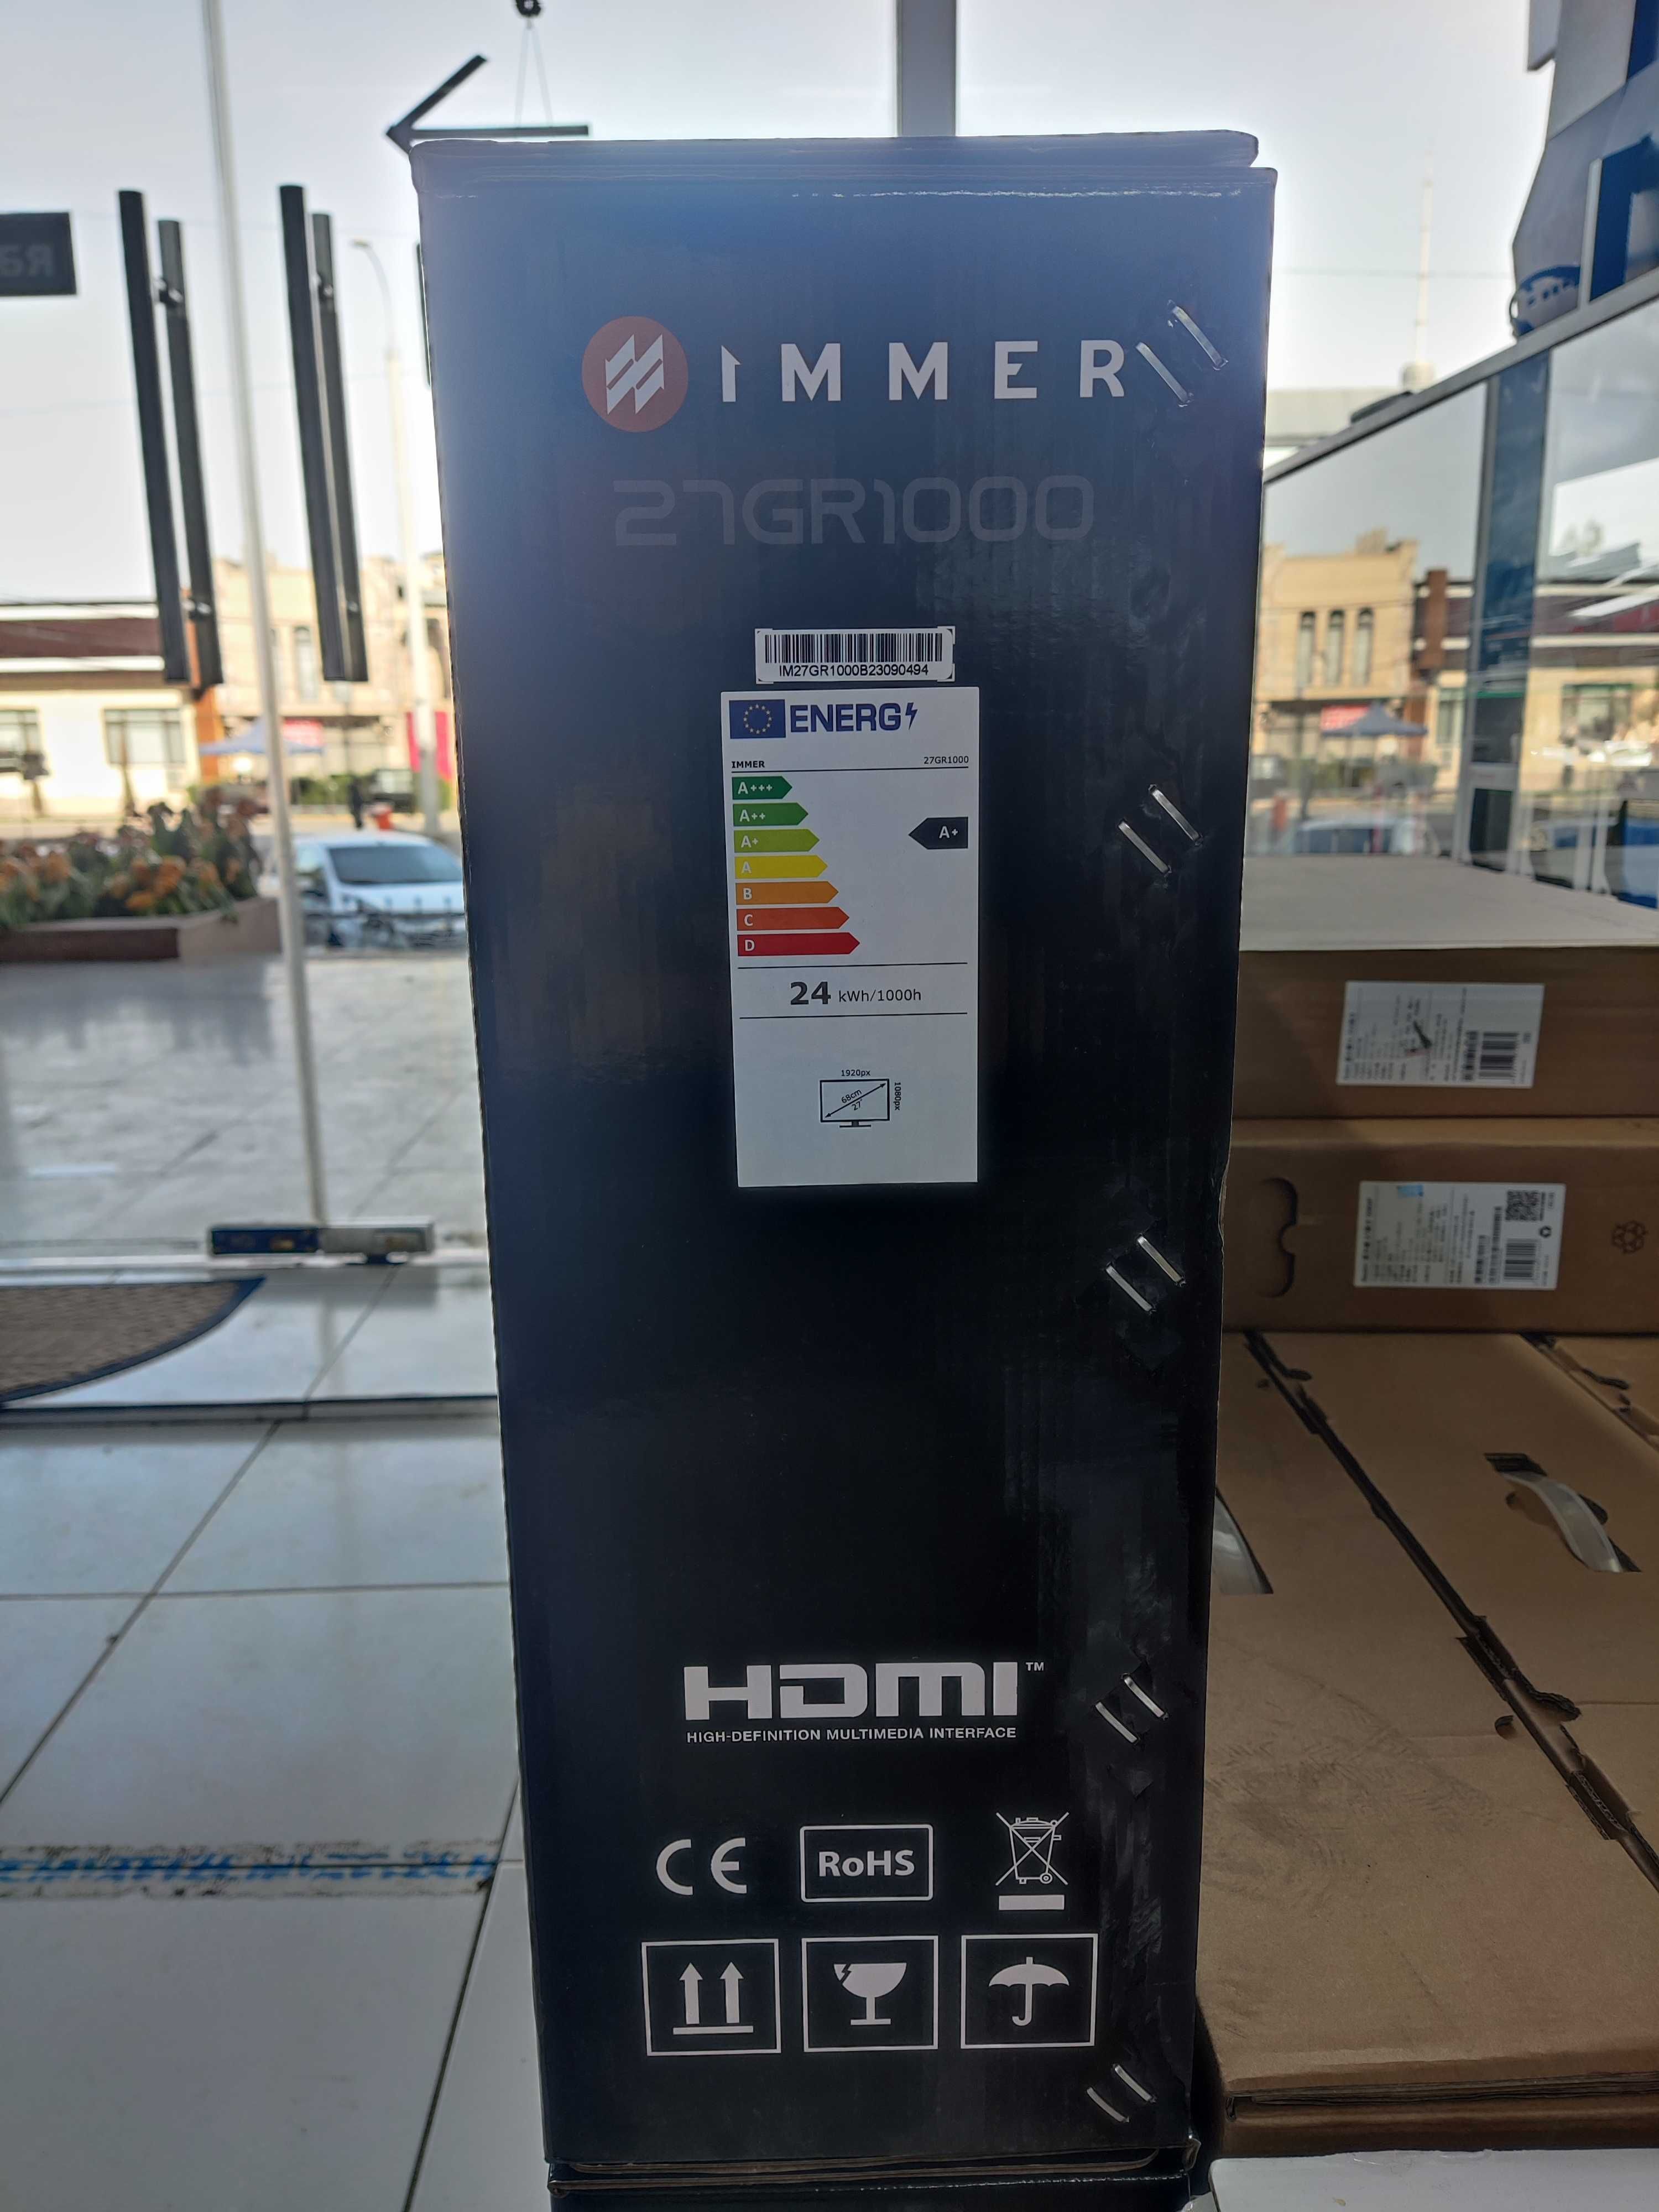 Монитор Immer Curved LED 27GR1000 (HDMI+DP) 165hz, FHD НОВЫЙ